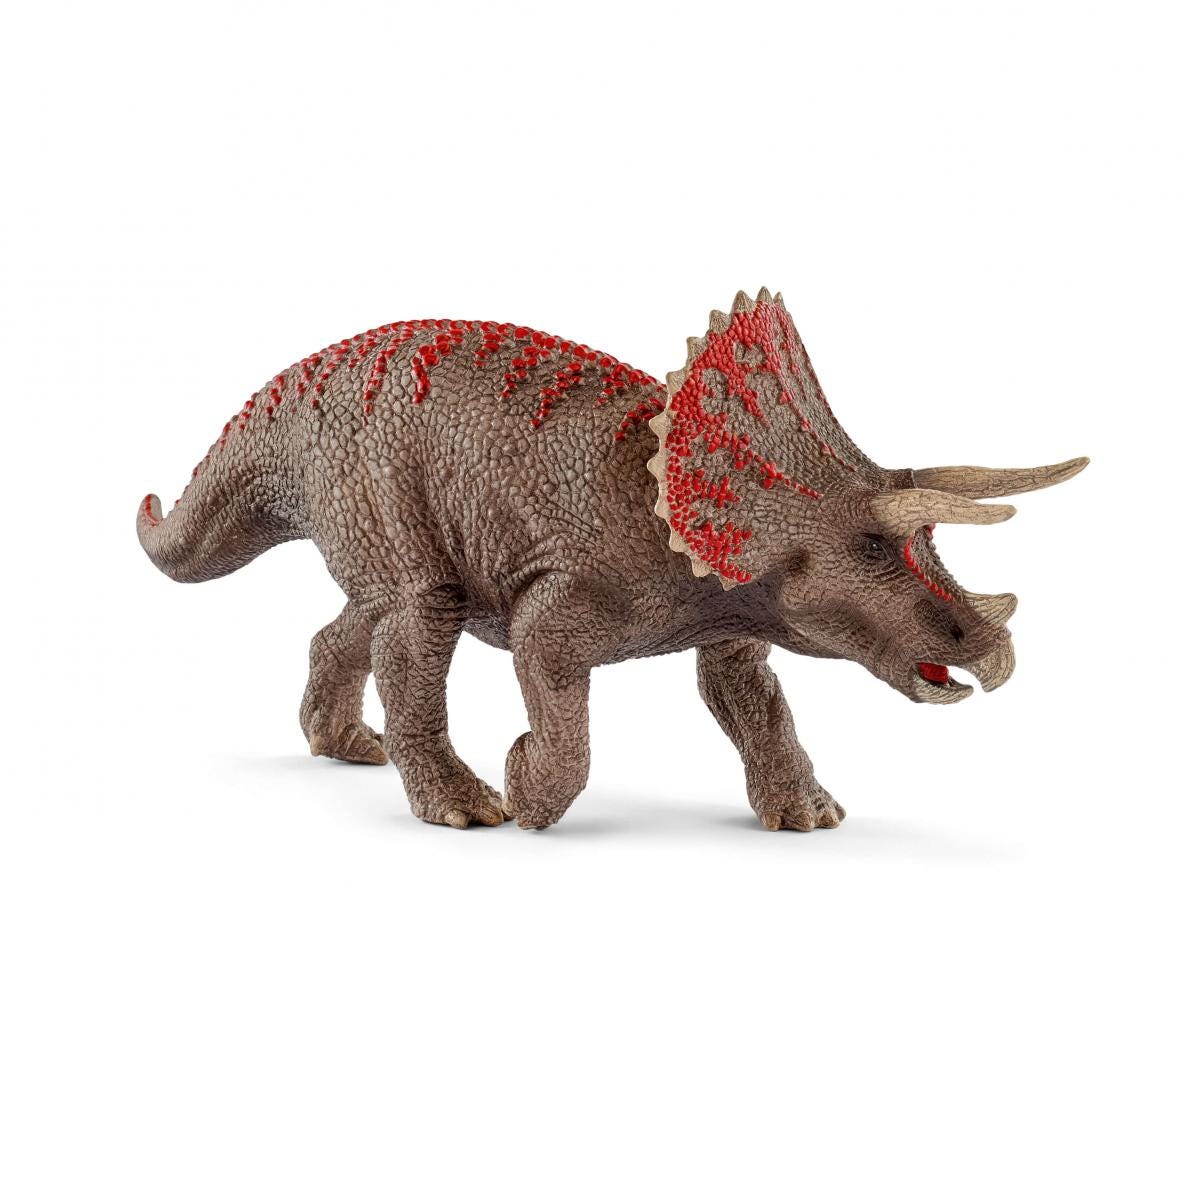 Schleich Triceratops Toy Figurine Gray Standard Schleich North America 15000